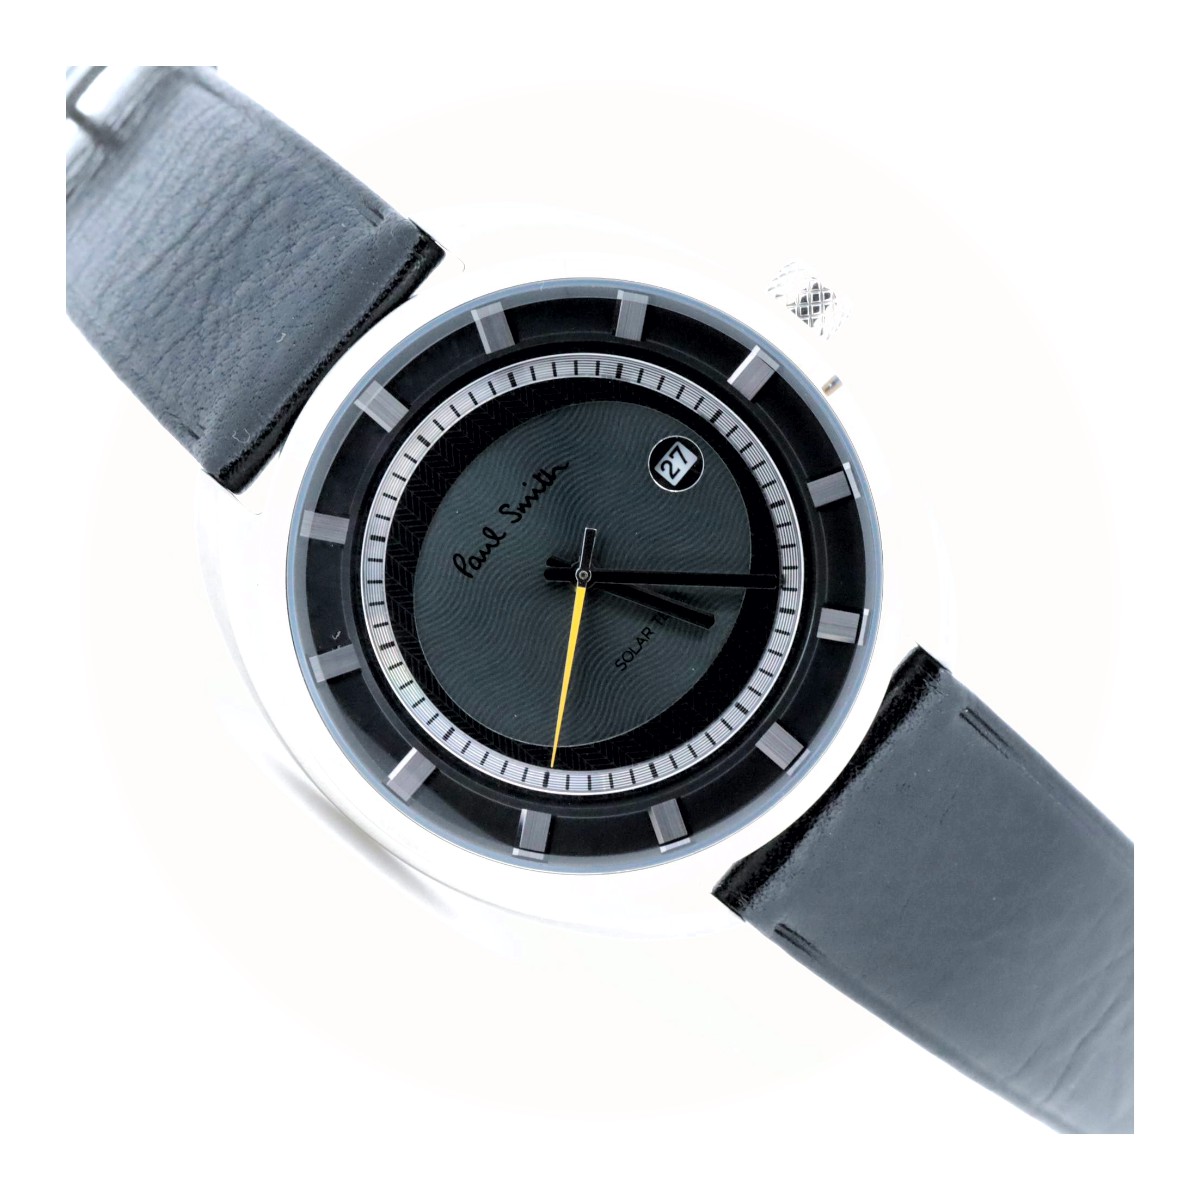 ポールスミス ラウンドフェイス ソーラーテック デイト J810-T021972 グレー メンズ腕時計 質屋出品 株式会社齋藤質店